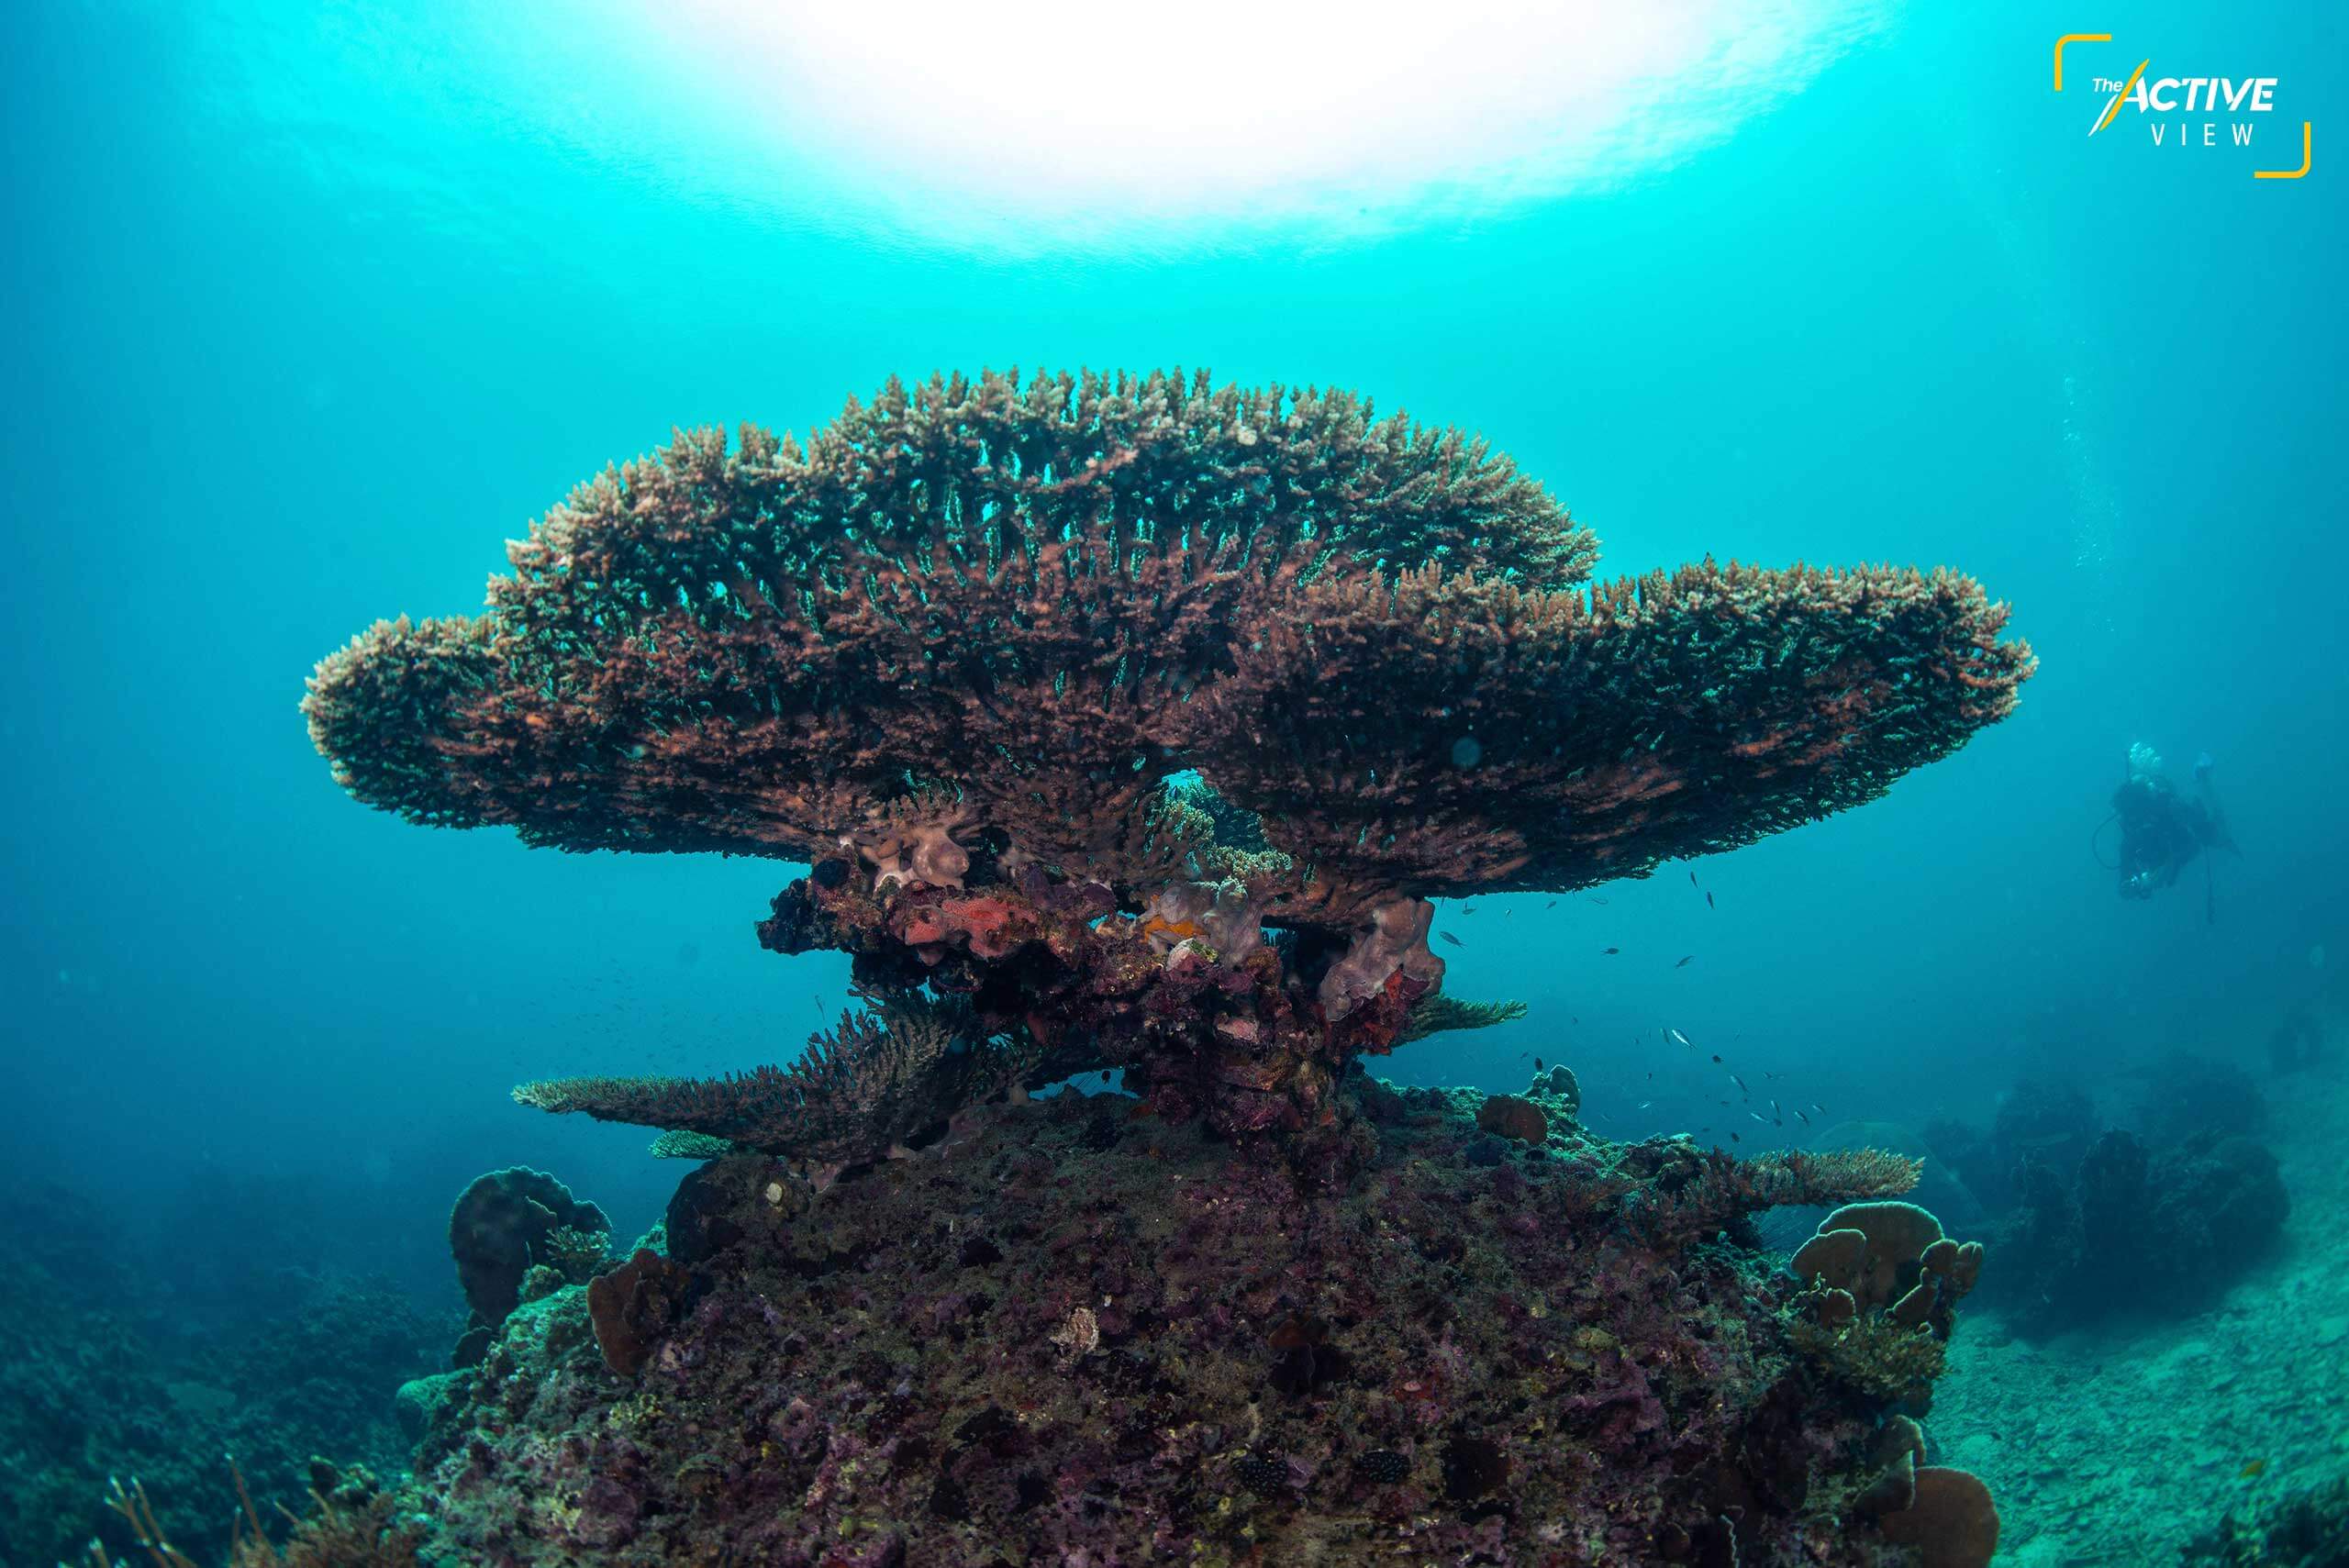 กอปะการังขนาดใหญ่ พบได้ทั่วไปในจุดดำน้ำรอบเกาะเต่า พวกมันต้องใช้เวลานานกว่าจะเติบโตได้ขนาดนี้ แต่ขณะเดียวกันพวกมันก็อ่อนไหว และเสี่ยงต่อการเสื่อมโทรม ทั้งจากการเปลี่ยนแปลงสภาพภูมิอากาศ รวมถึงกิจกรรม และสารเคมีในครีมกันแดดของนักท่องเที่ยว
.
ภาพ : Thai News Pix